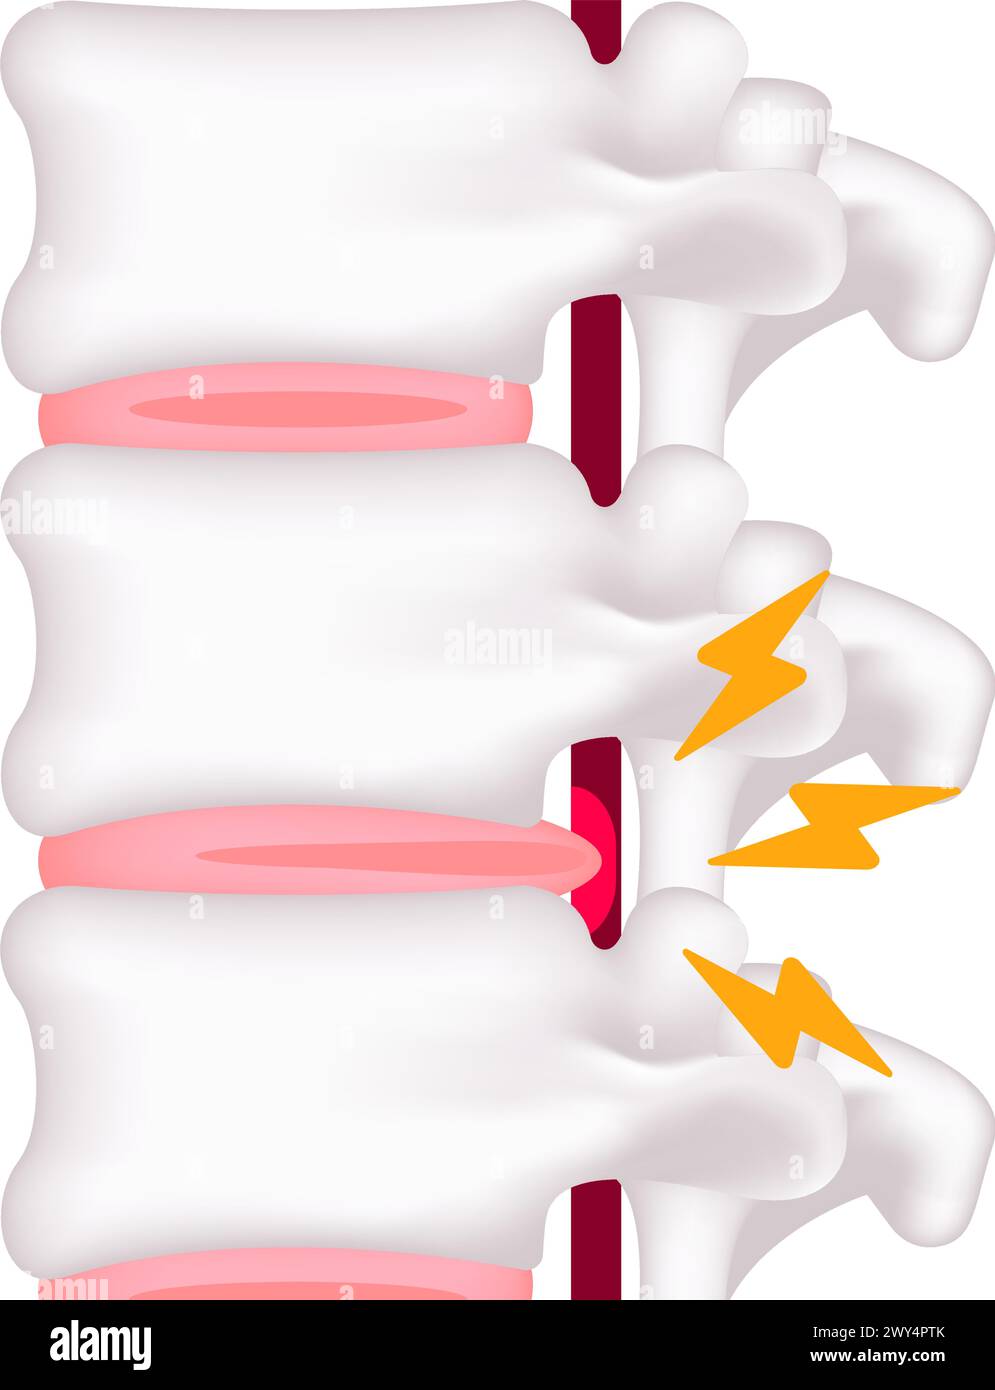 Illustrazione del vettore di erniazione del disco spinale Illustrazione Vettoriale